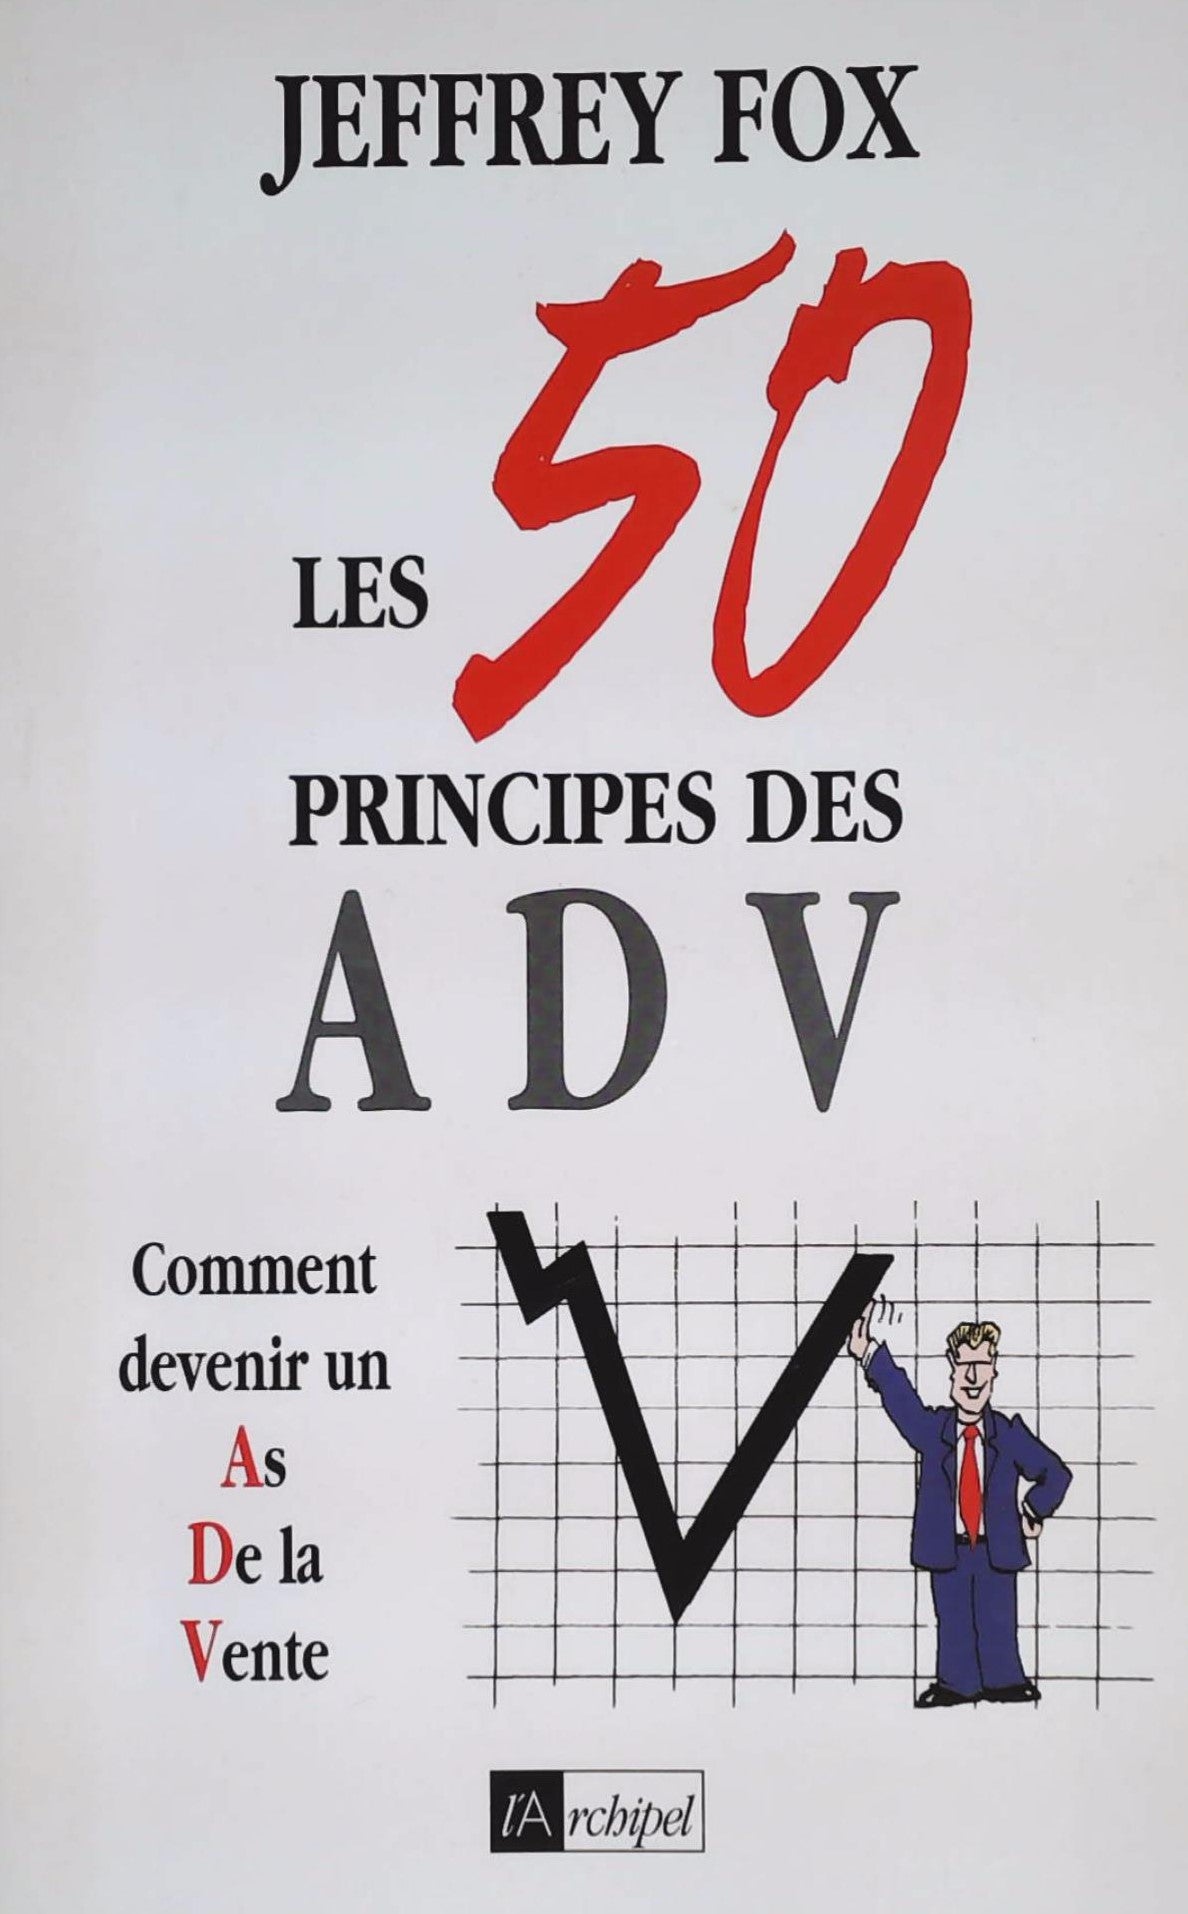 Livre ISBN 2841873633 Les 50 principes des ADV : Comment devenir un As De la Vente (Jeffrey Fox)